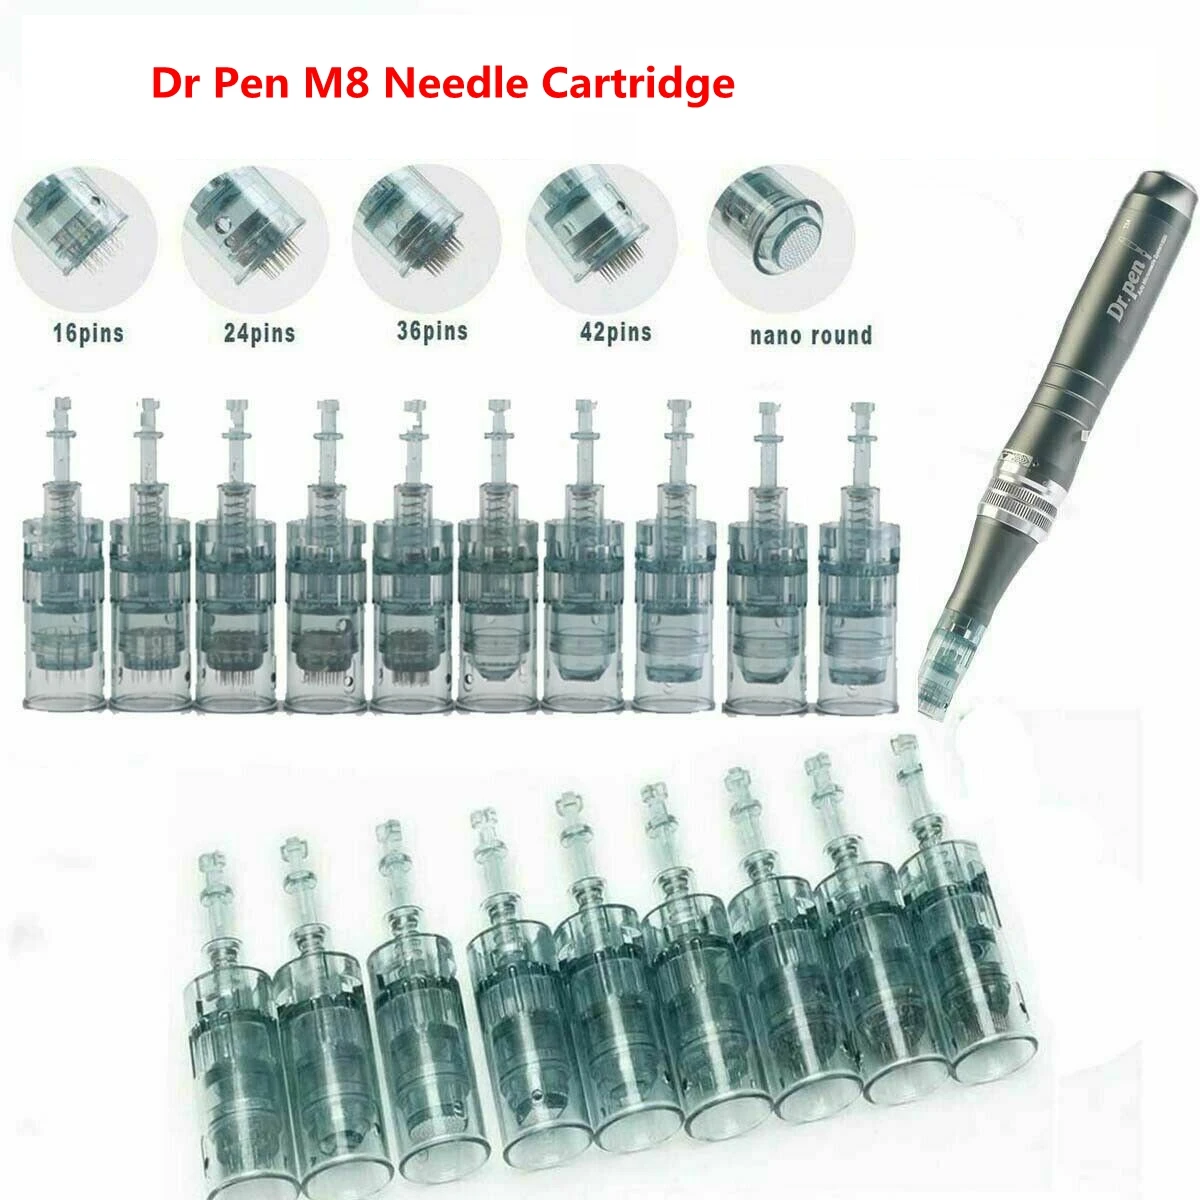 

10pcs Dr Pen M8 Needle Cartridge Derma Pen 11/16/24/36/42/Nano Microneedling Pen Tattoos Needles Replacement Skin Needling Tip